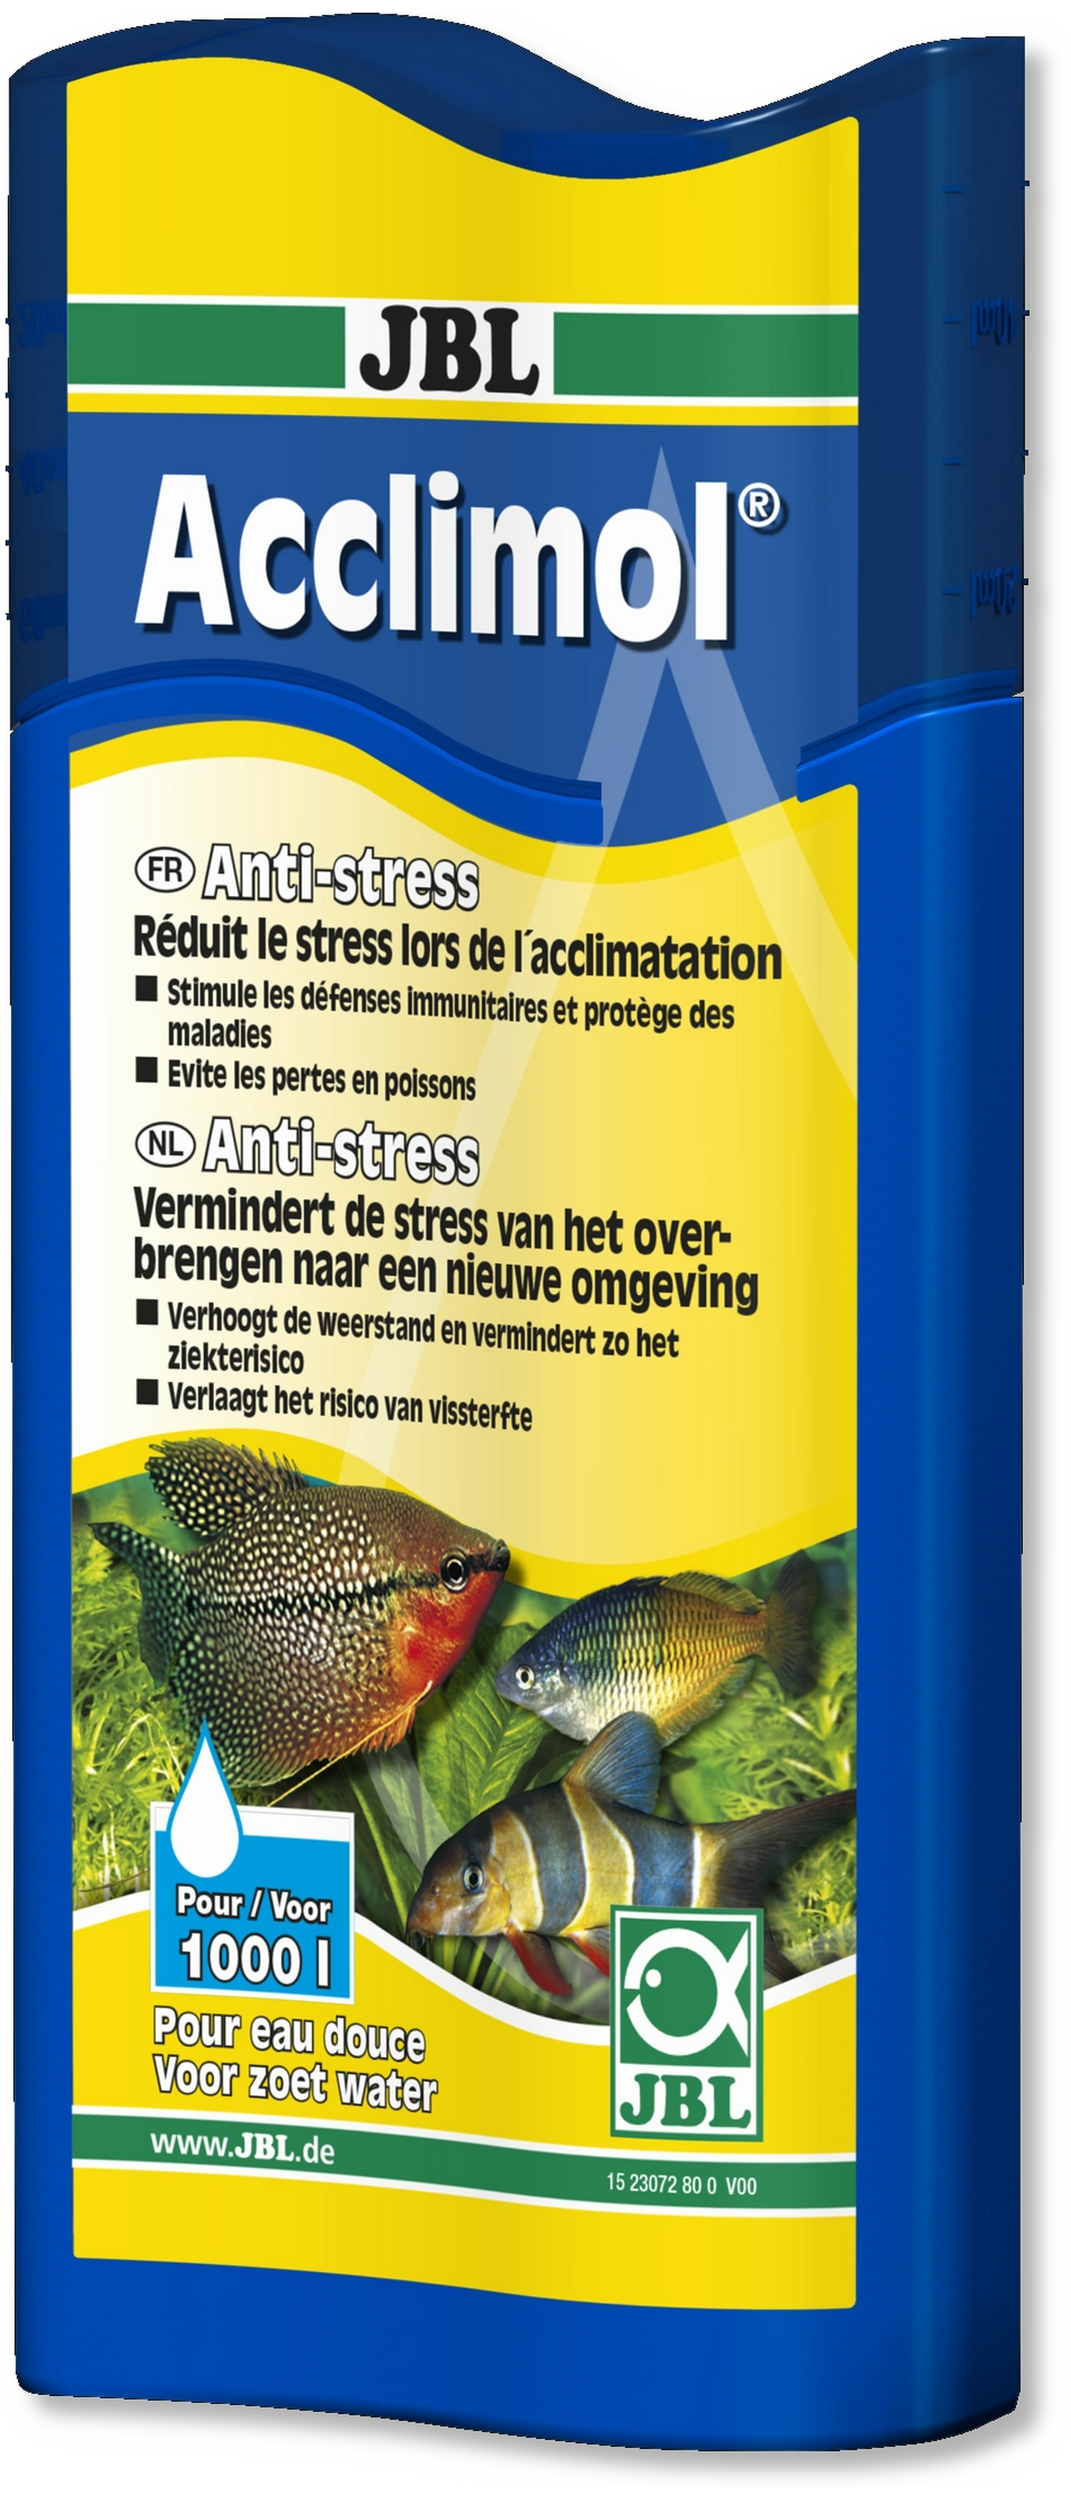 jbl-acclimol-250-ml-reducteur-de-stress-pour-l-acclimatation-de-nouveaux-poissons-traite-jusqu-a-1000-l-d-eau